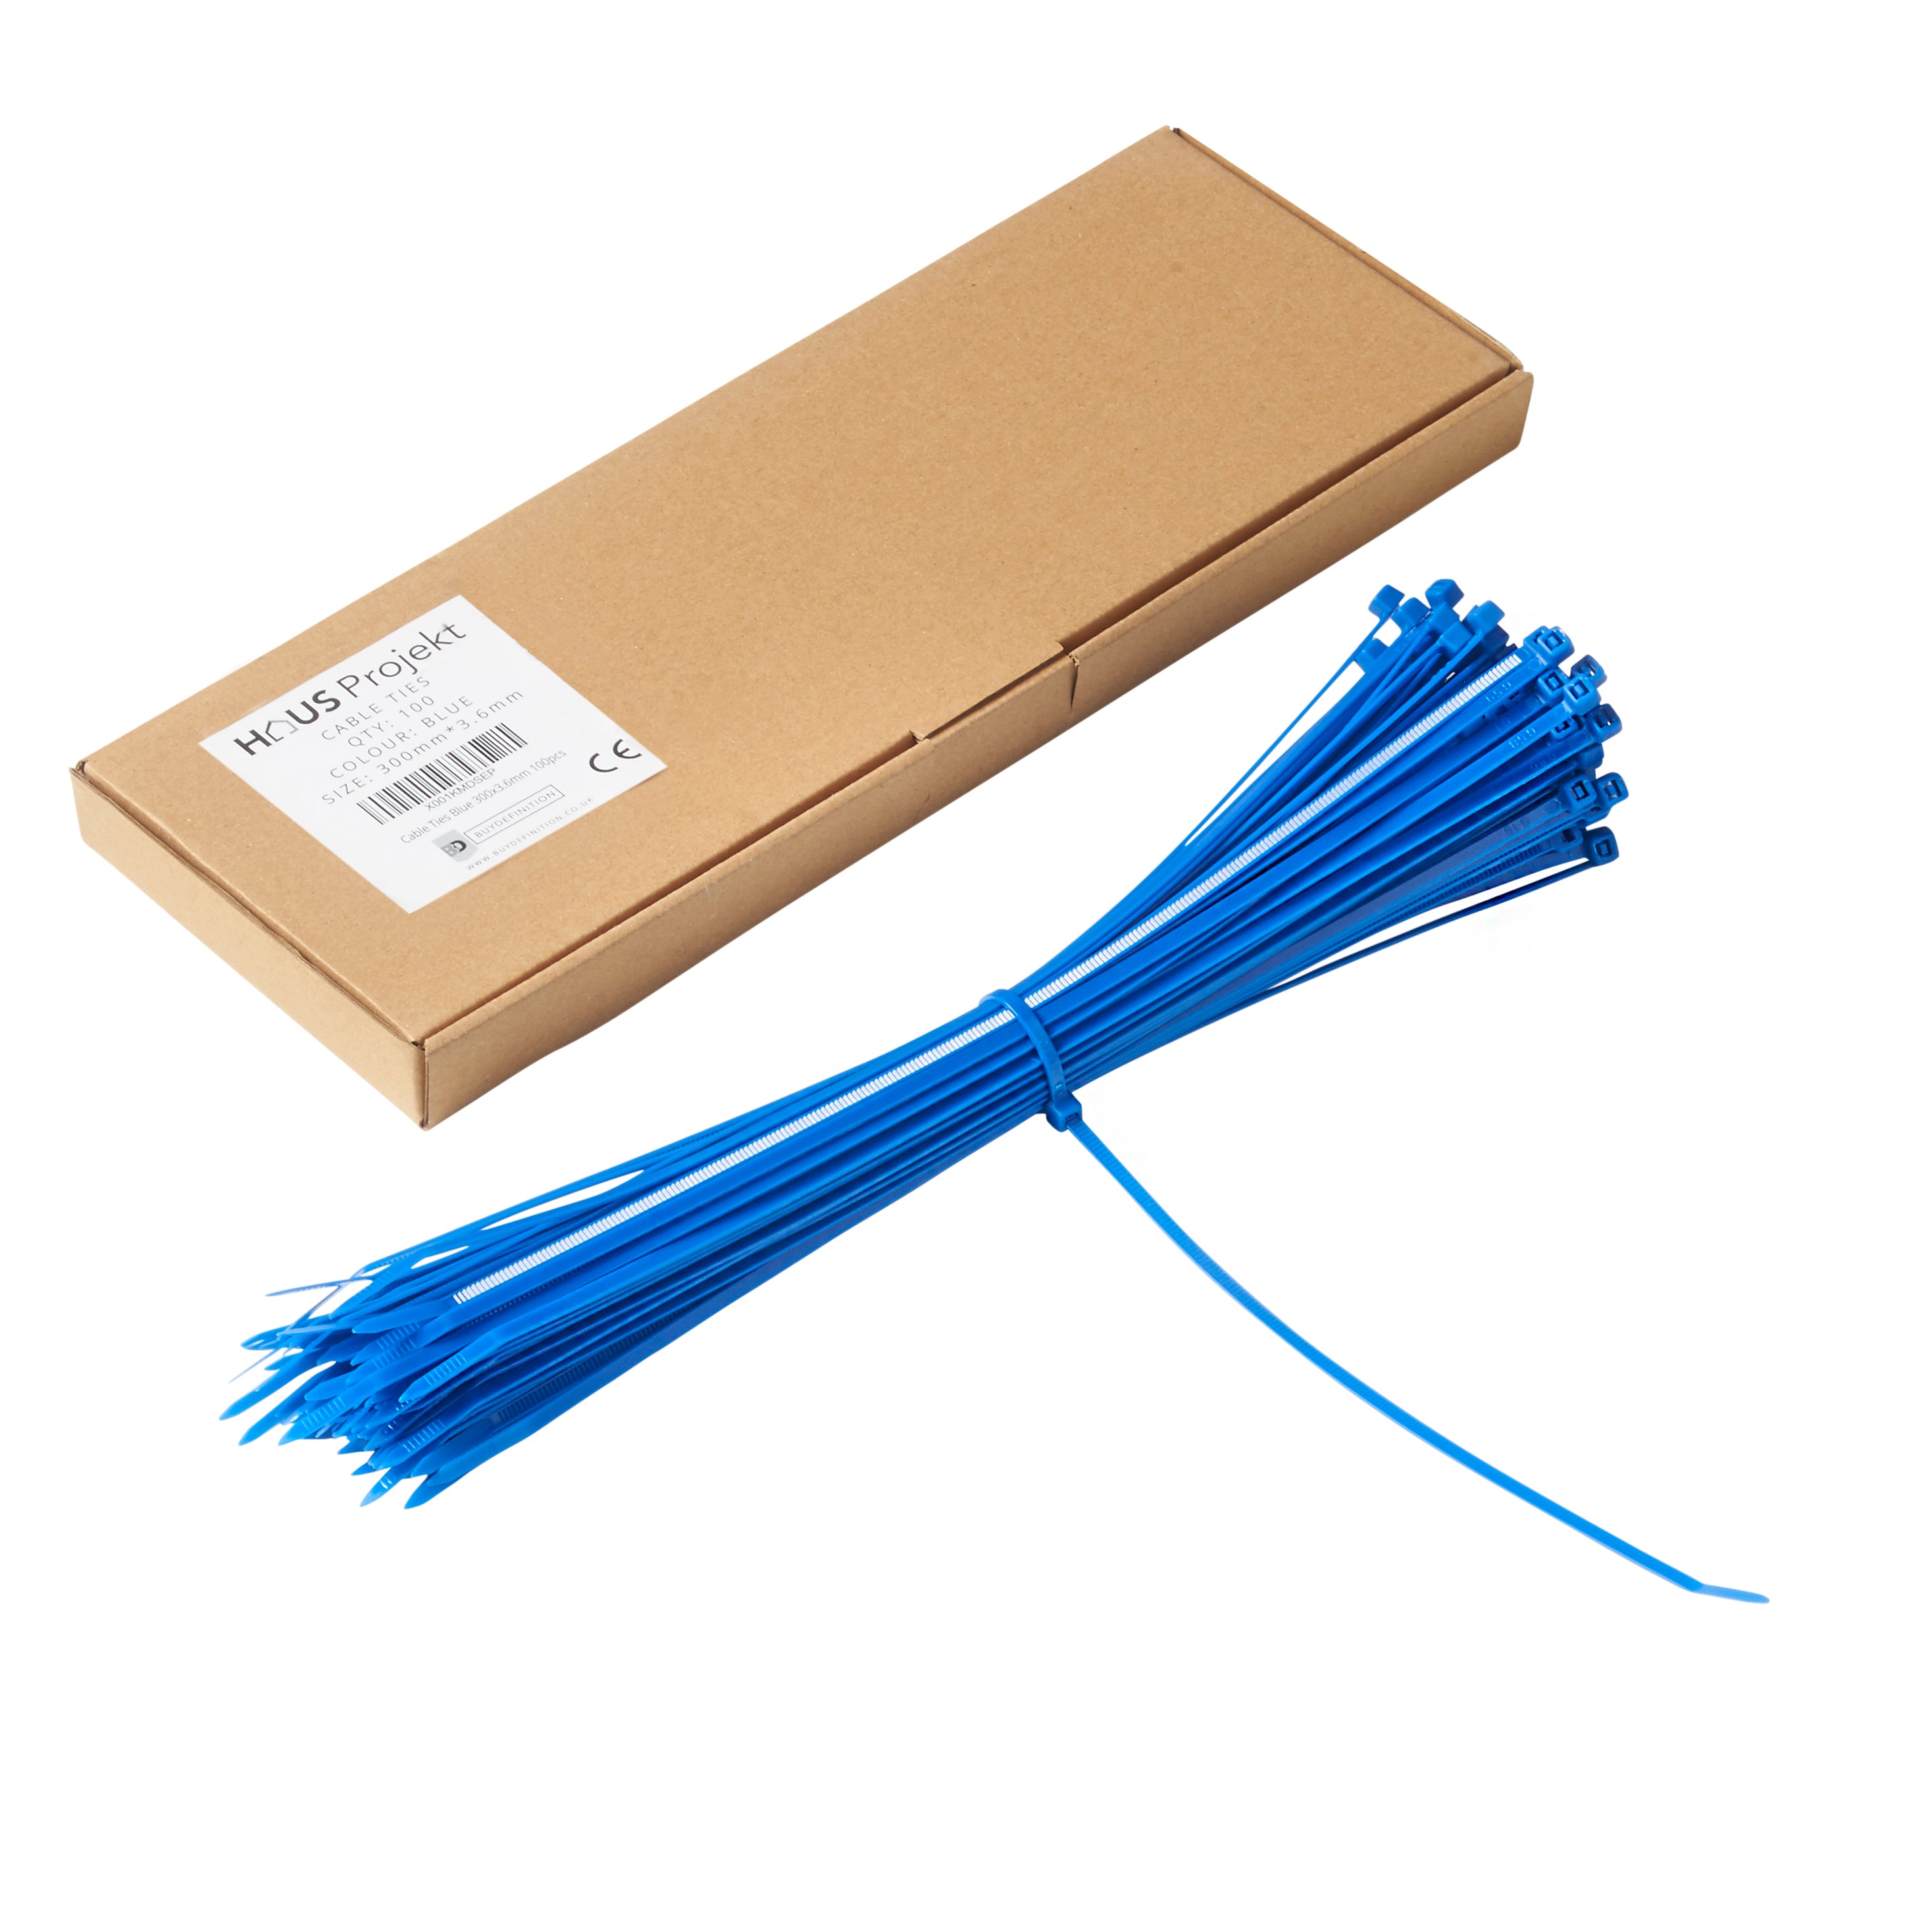 Haus Projekt 300x3.6mm Small Cable Ties, 100pcs Premium Industrial Zip Ties